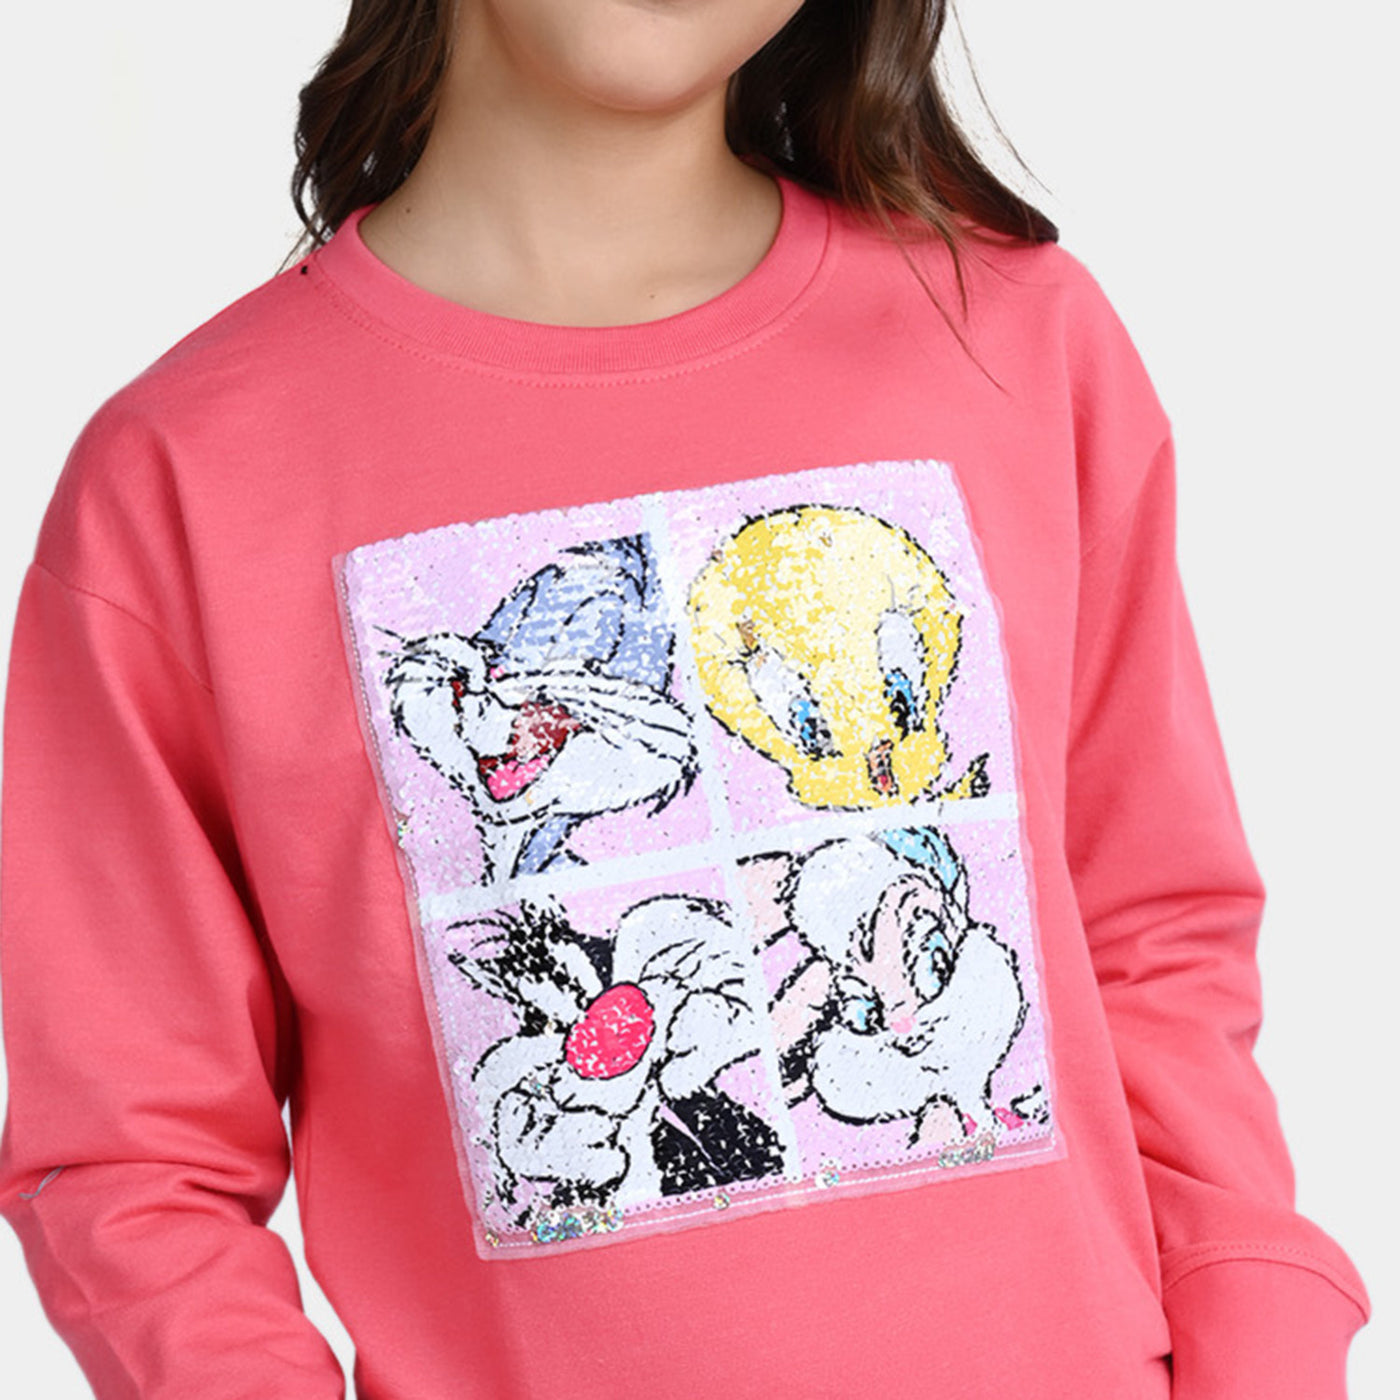 Girls Fleece Sweatshirt Character-Hot Pink